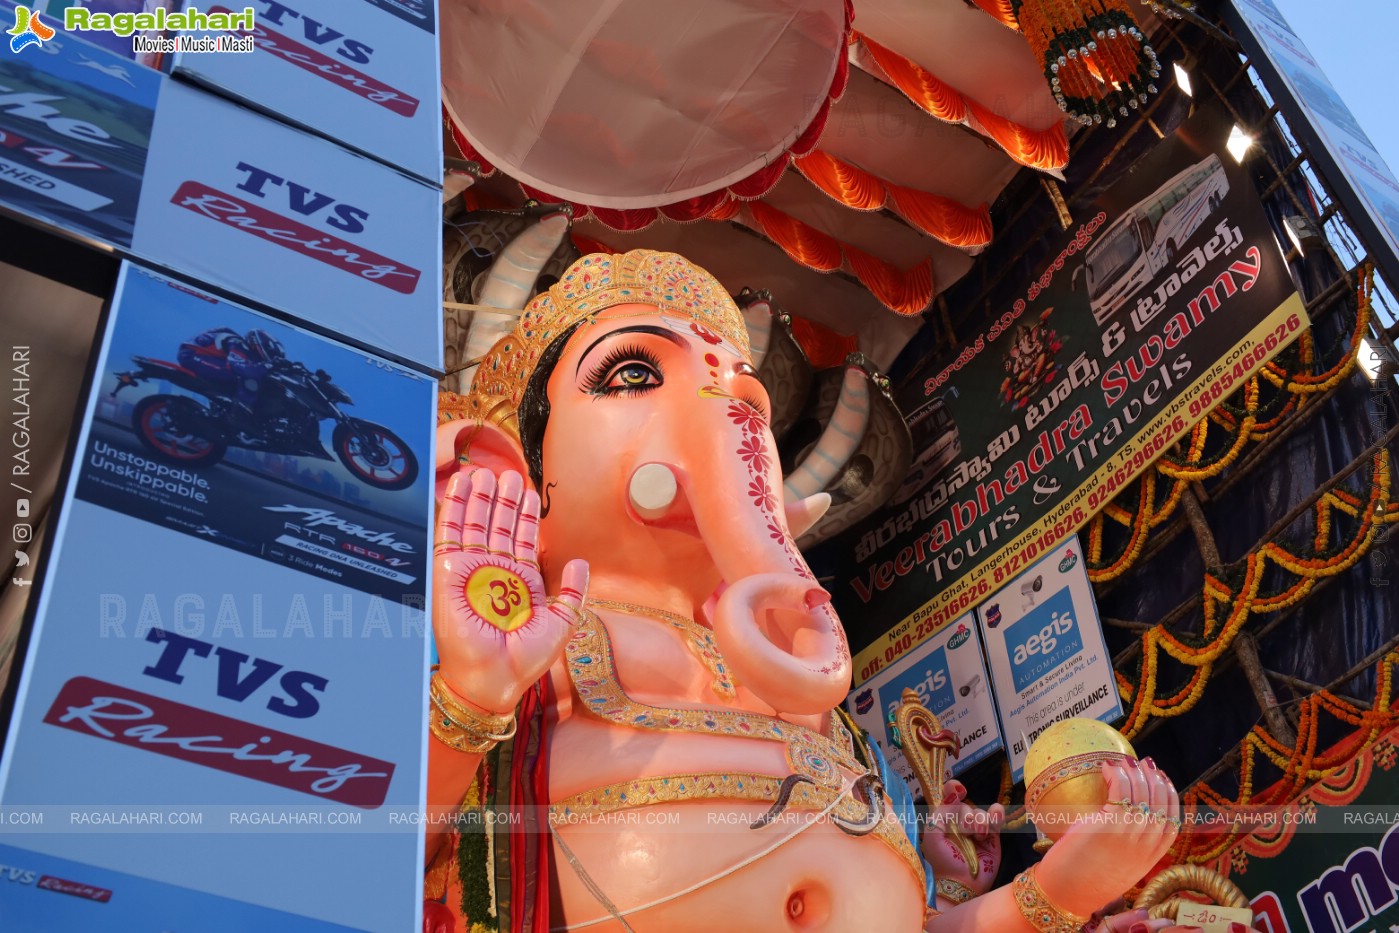 Khairatabad Ganesh 2023 as Dasha Maha Vidya Maha Ganapathi- 63 feet Tall Idol